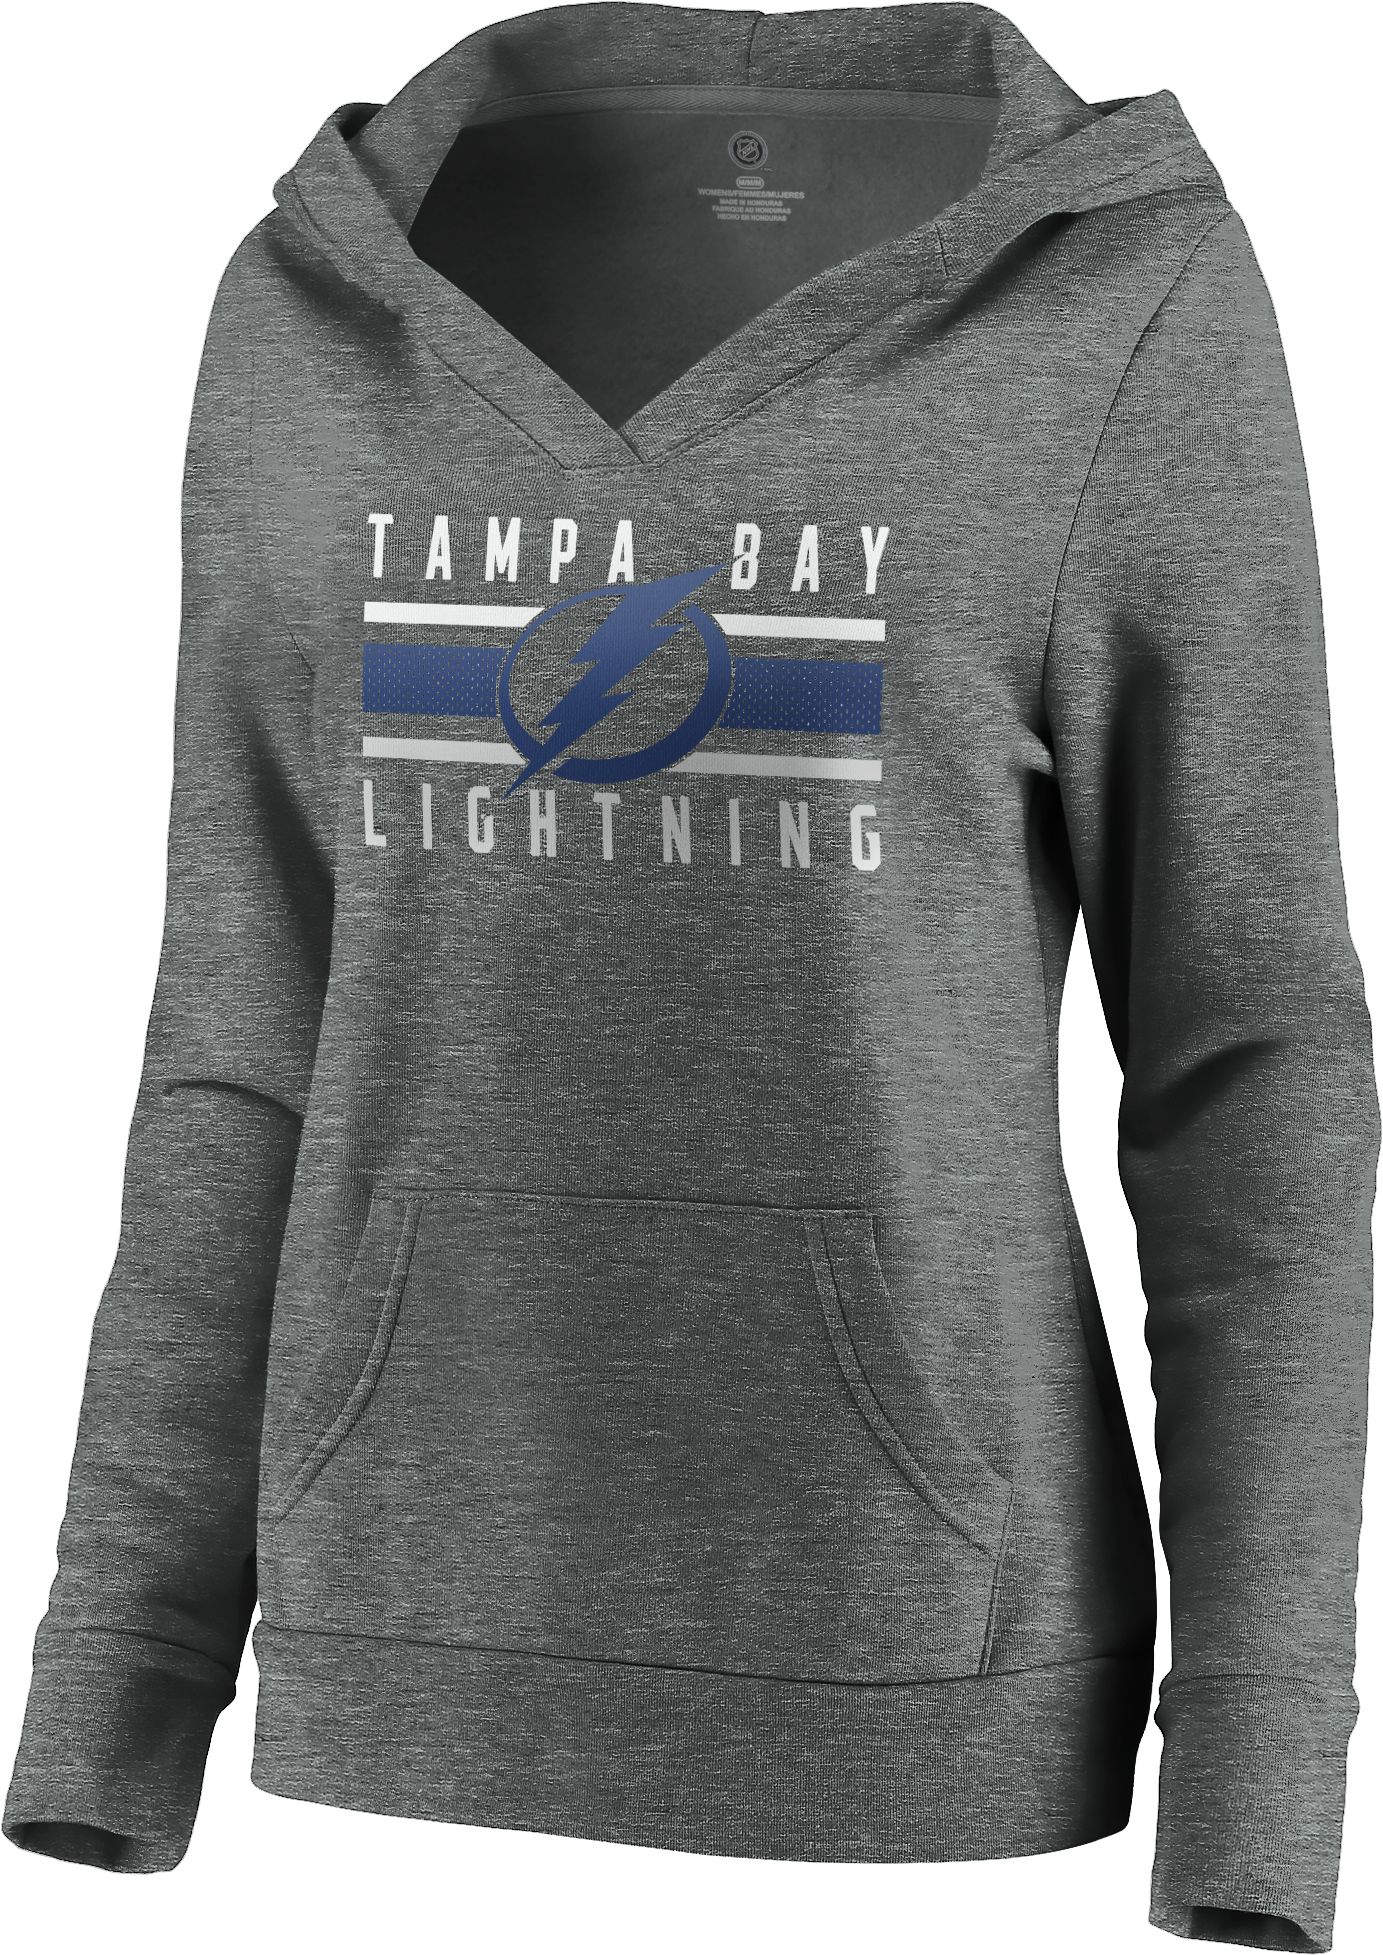 tampa bay lightning women's hoodie